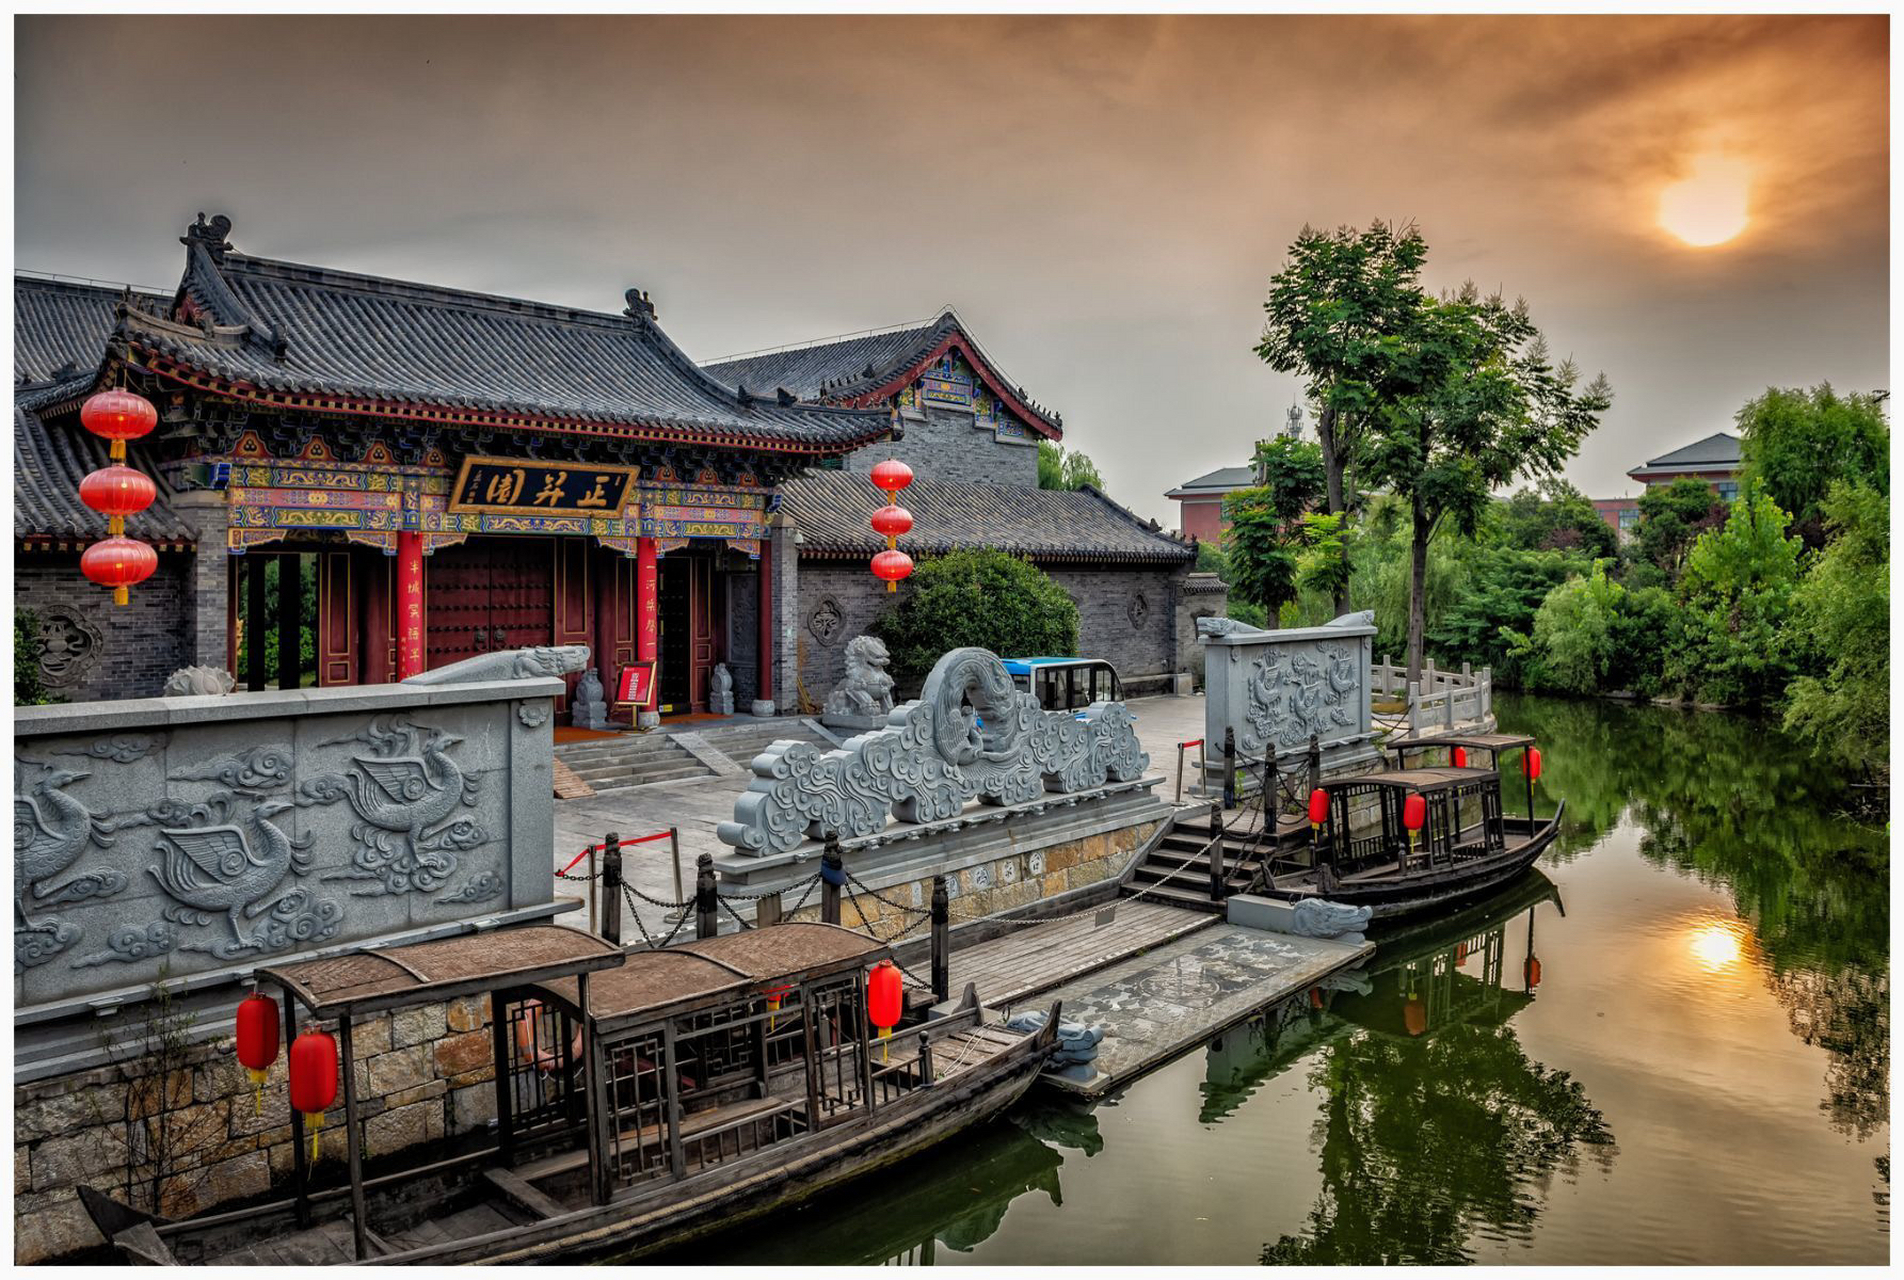 微山湖畔,古老的京杭大运河缓缓流淌,岁月悠悠,随波荡漾;台儿庄里